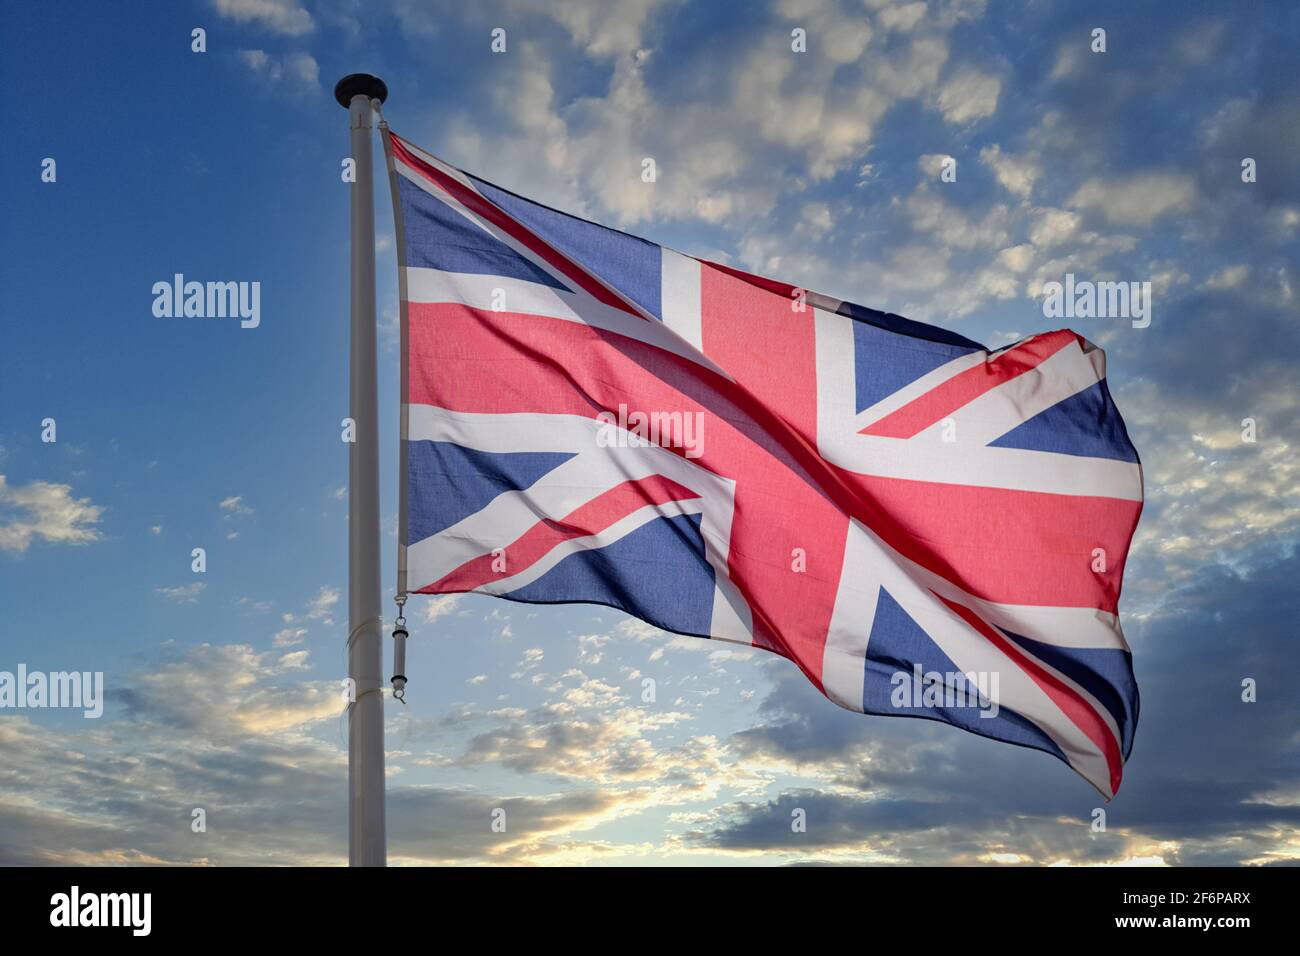 Bandiera britannica, Regno Unito simbolo nazionale della Gran Bretagna e dell'Irlanda del Nord su un palo che oscilla contro il cielo blu nuvoloso Foto Stock